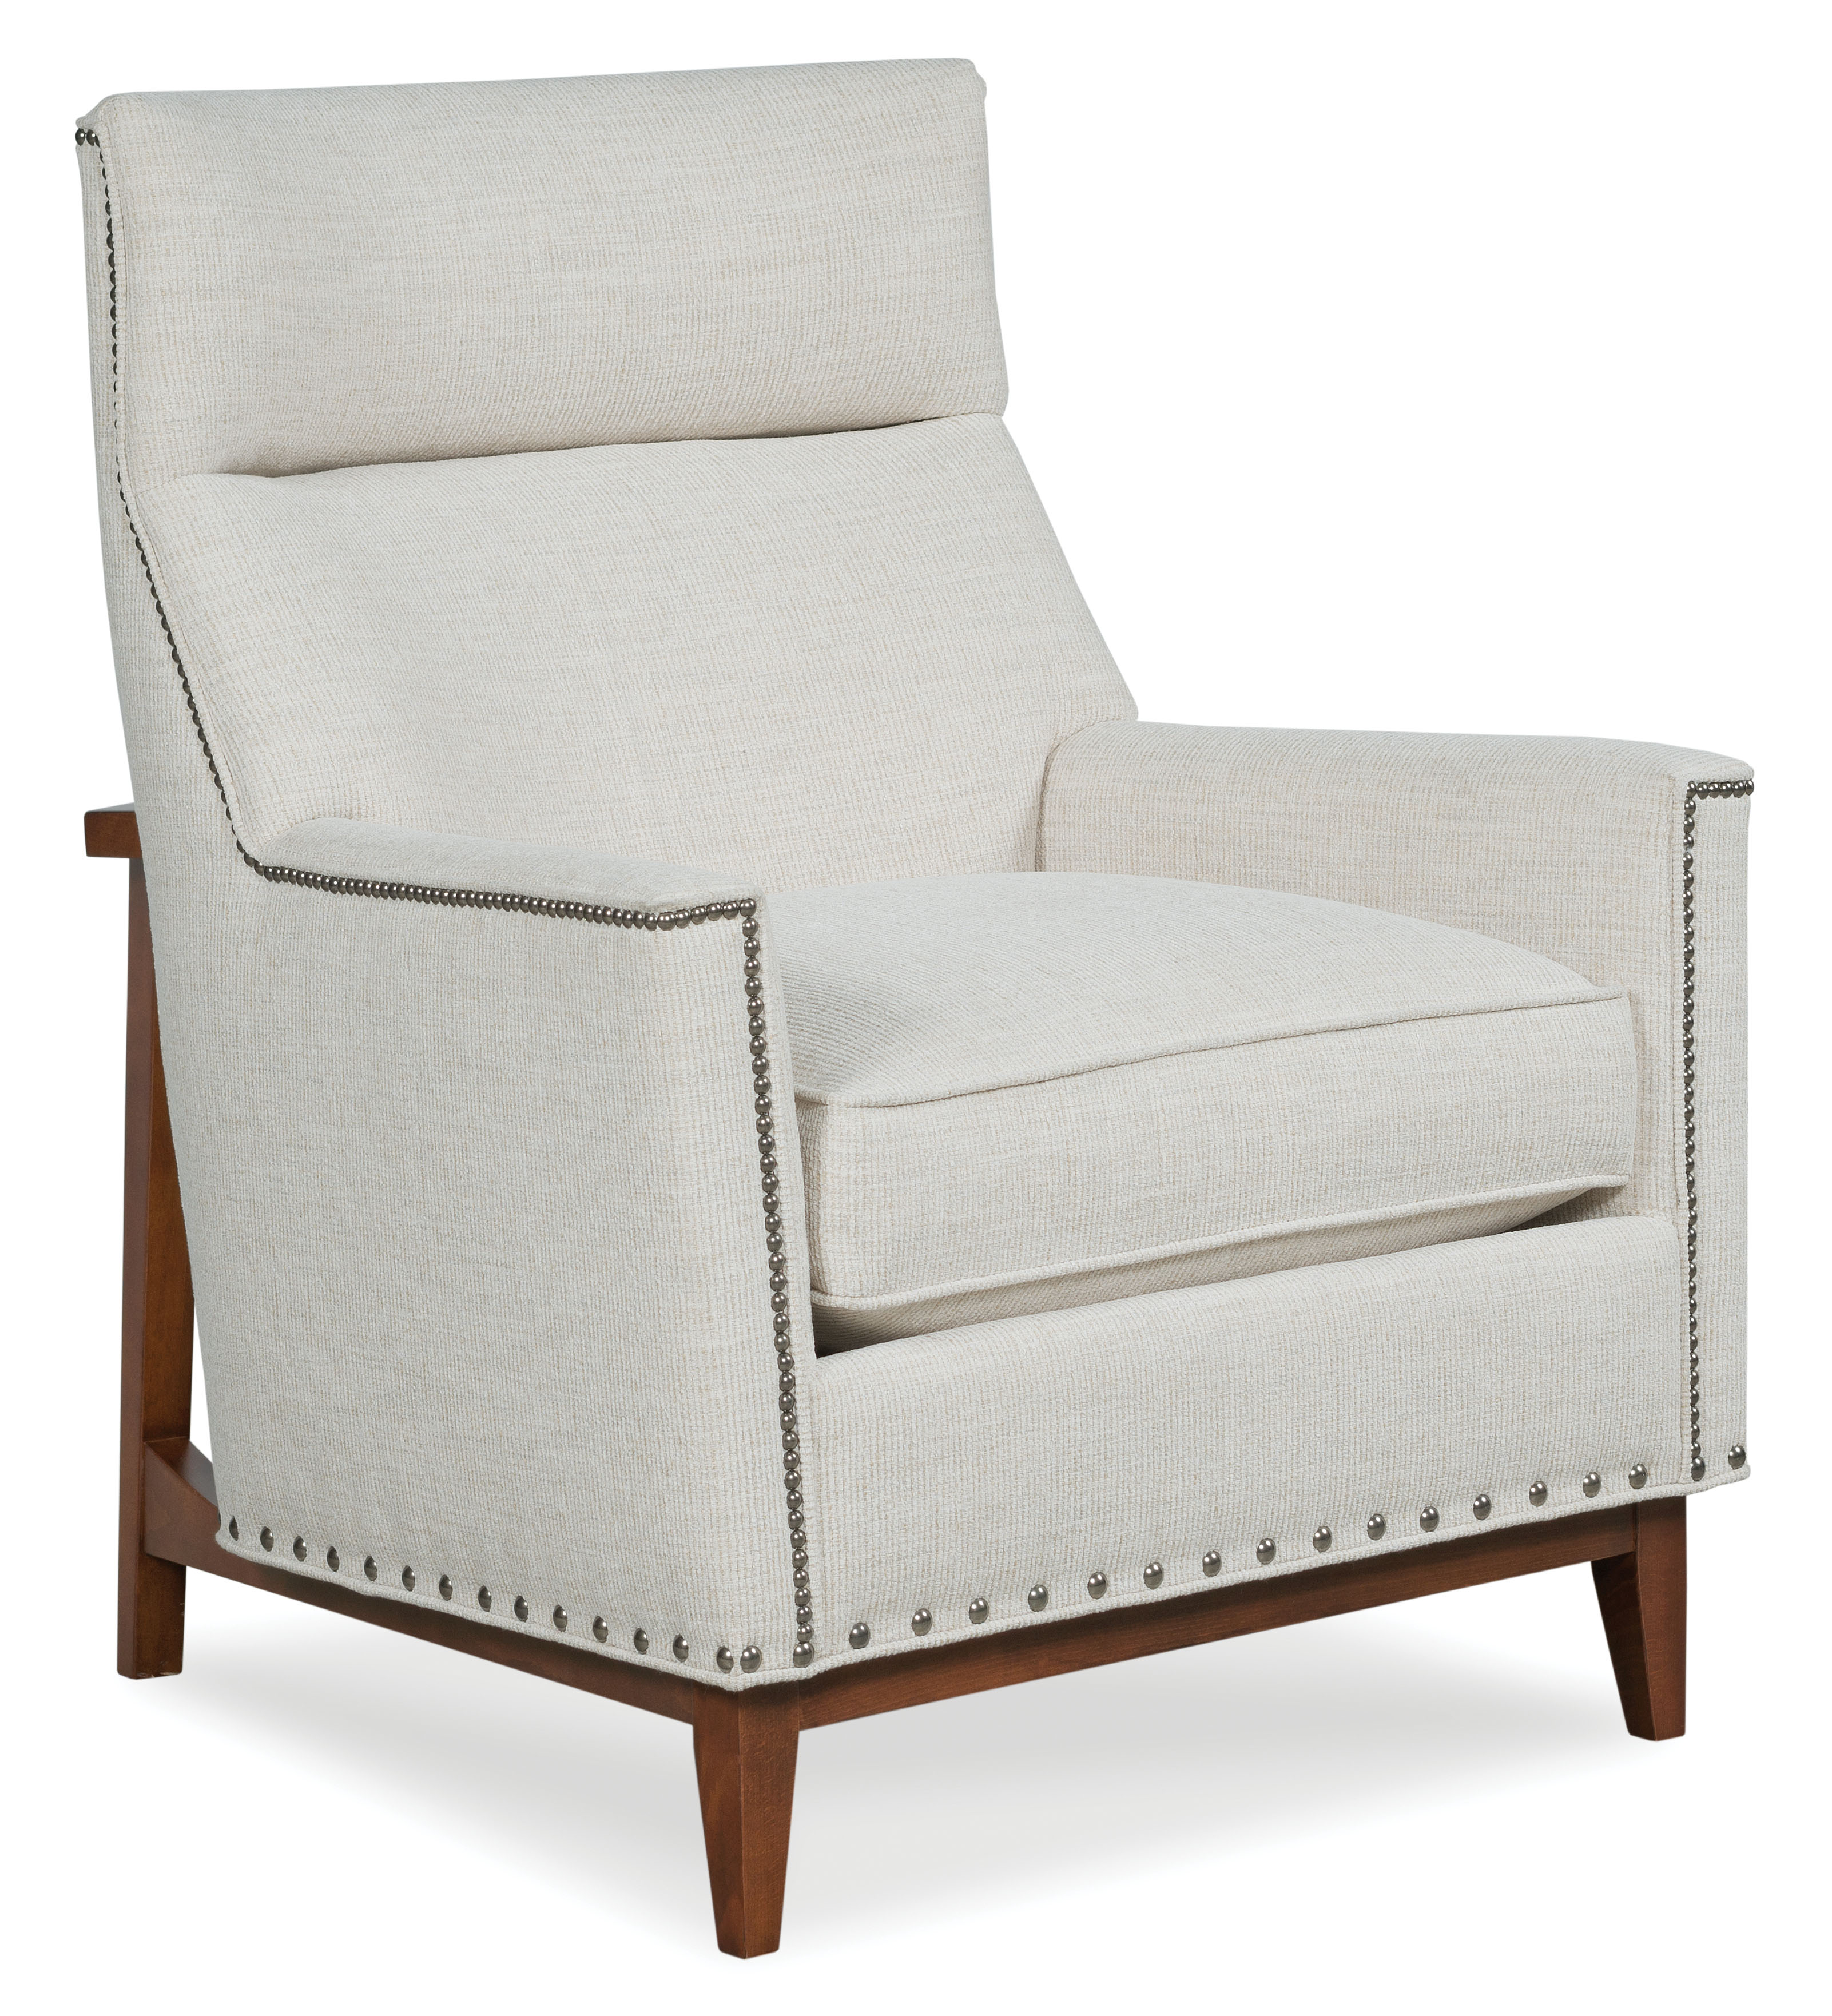 Fairfield Chair Rustic Modern